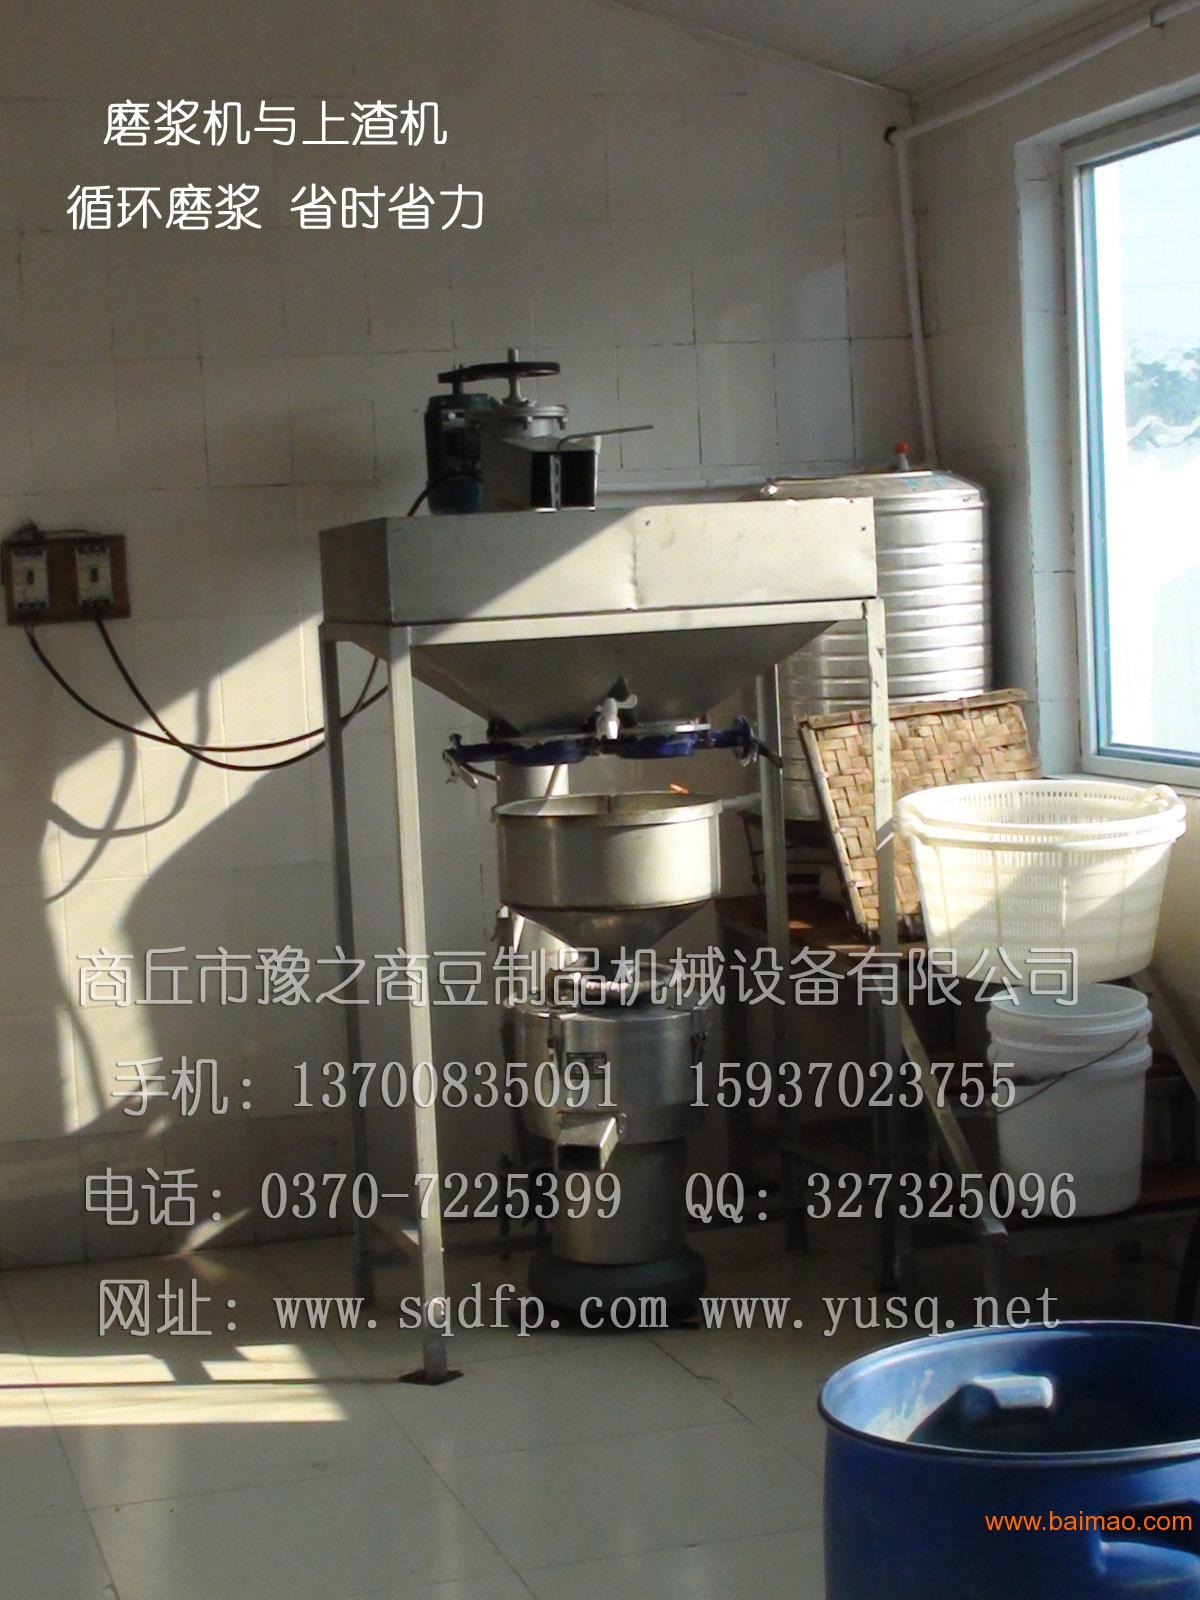 豫之商 豆腐皮机--免费参观生产线、包教技术